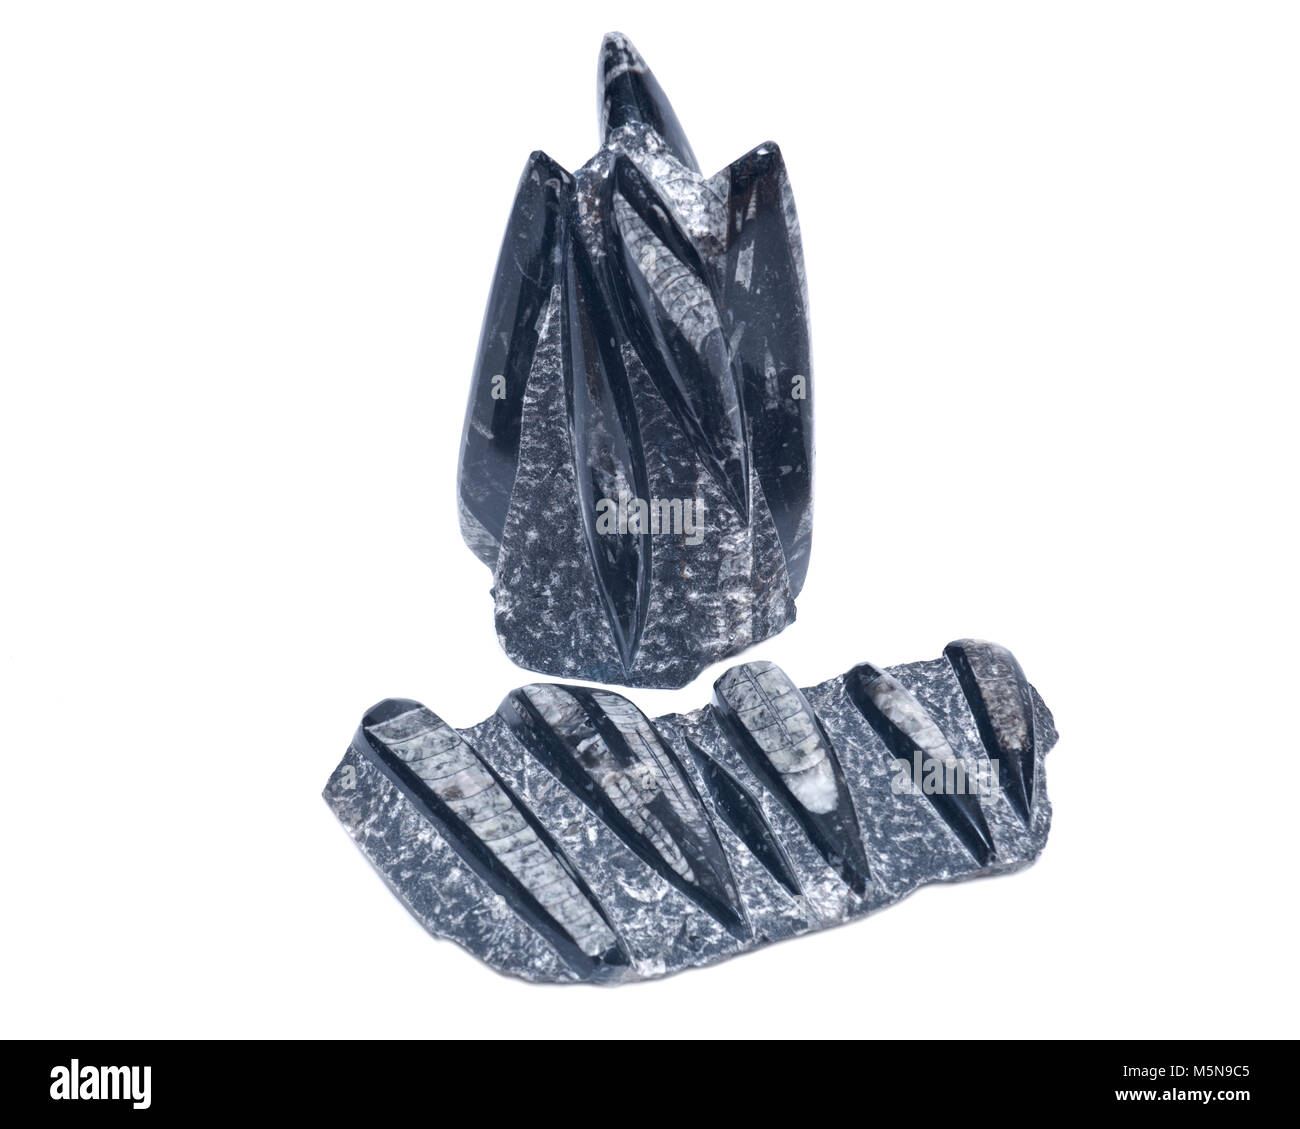 Orthoceras énorme sculpture fossiles de marbre noir isolé sur fond blanc Banque D'Images